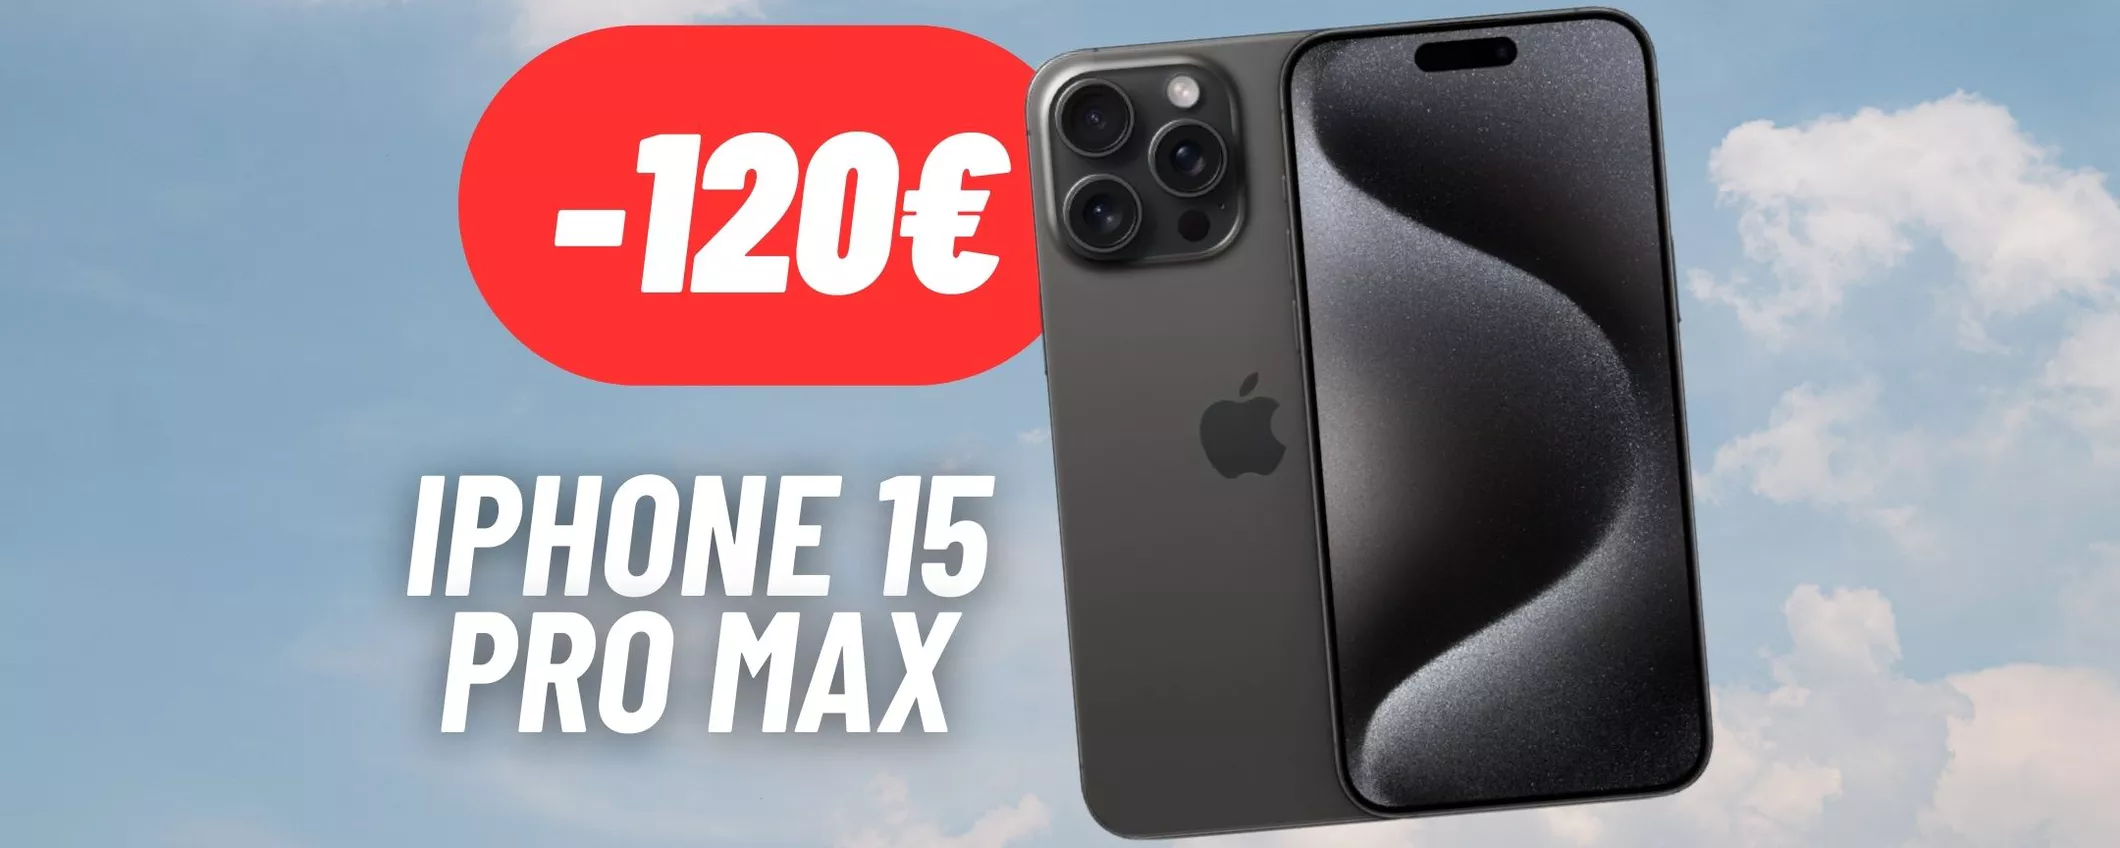 RISPARMIA 120€ su iPhone 15 Pro Max: sconto folle su eBay